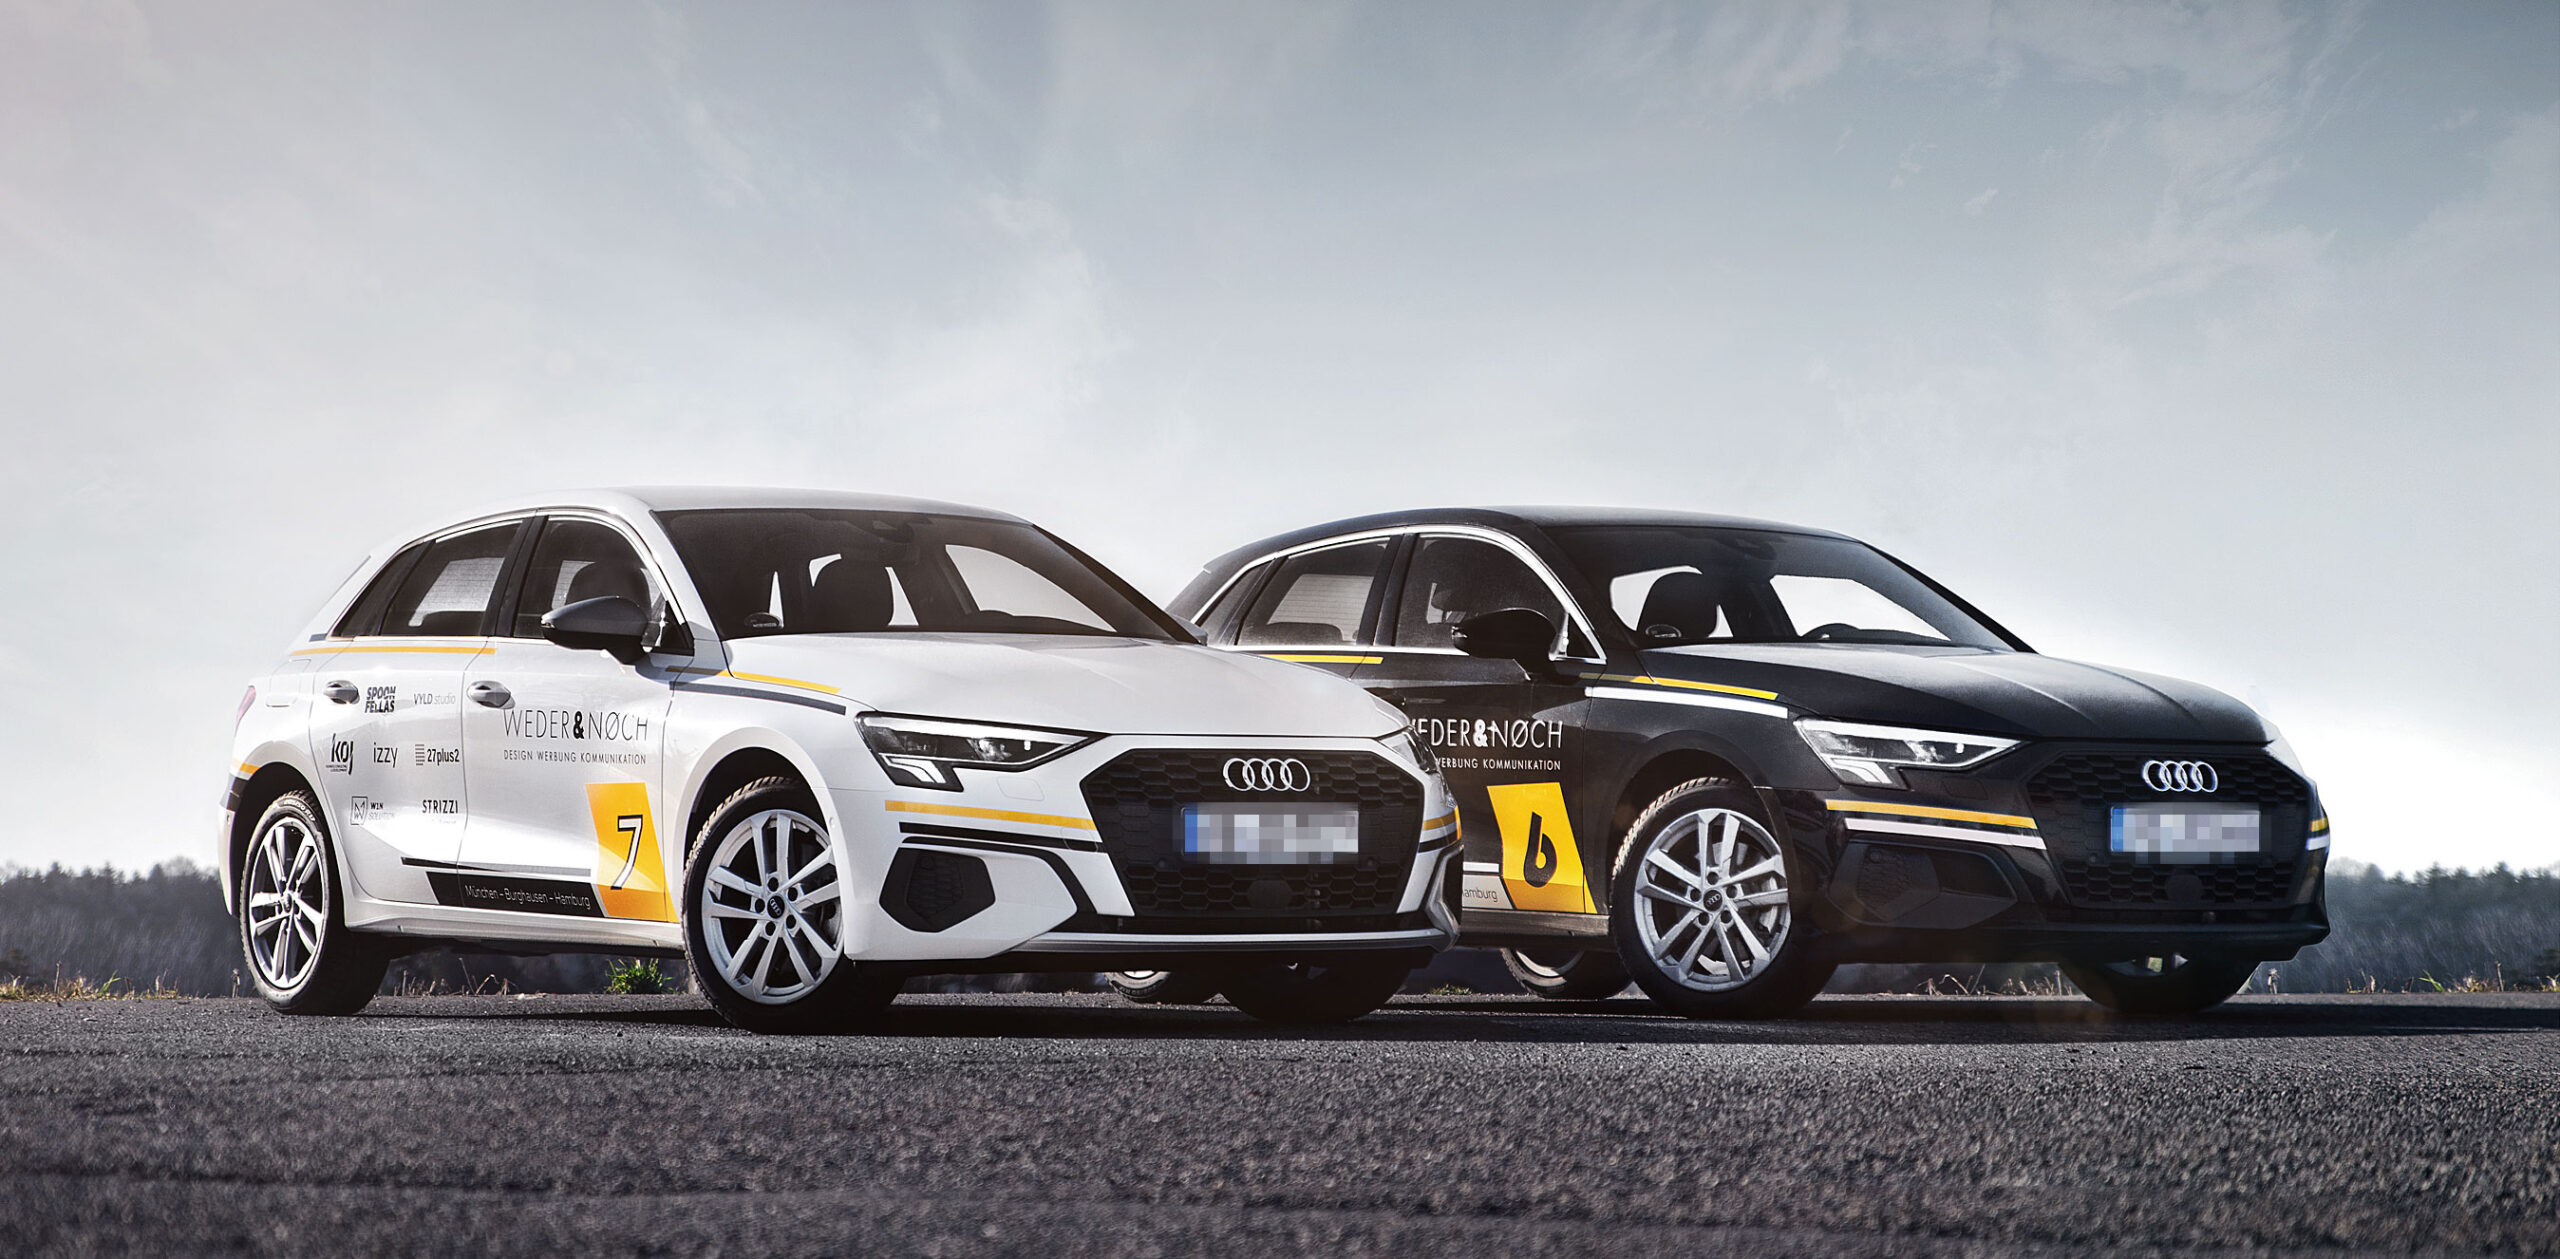 Weder & Noch Fahrzeugbeklebung Audi schwarz weiß